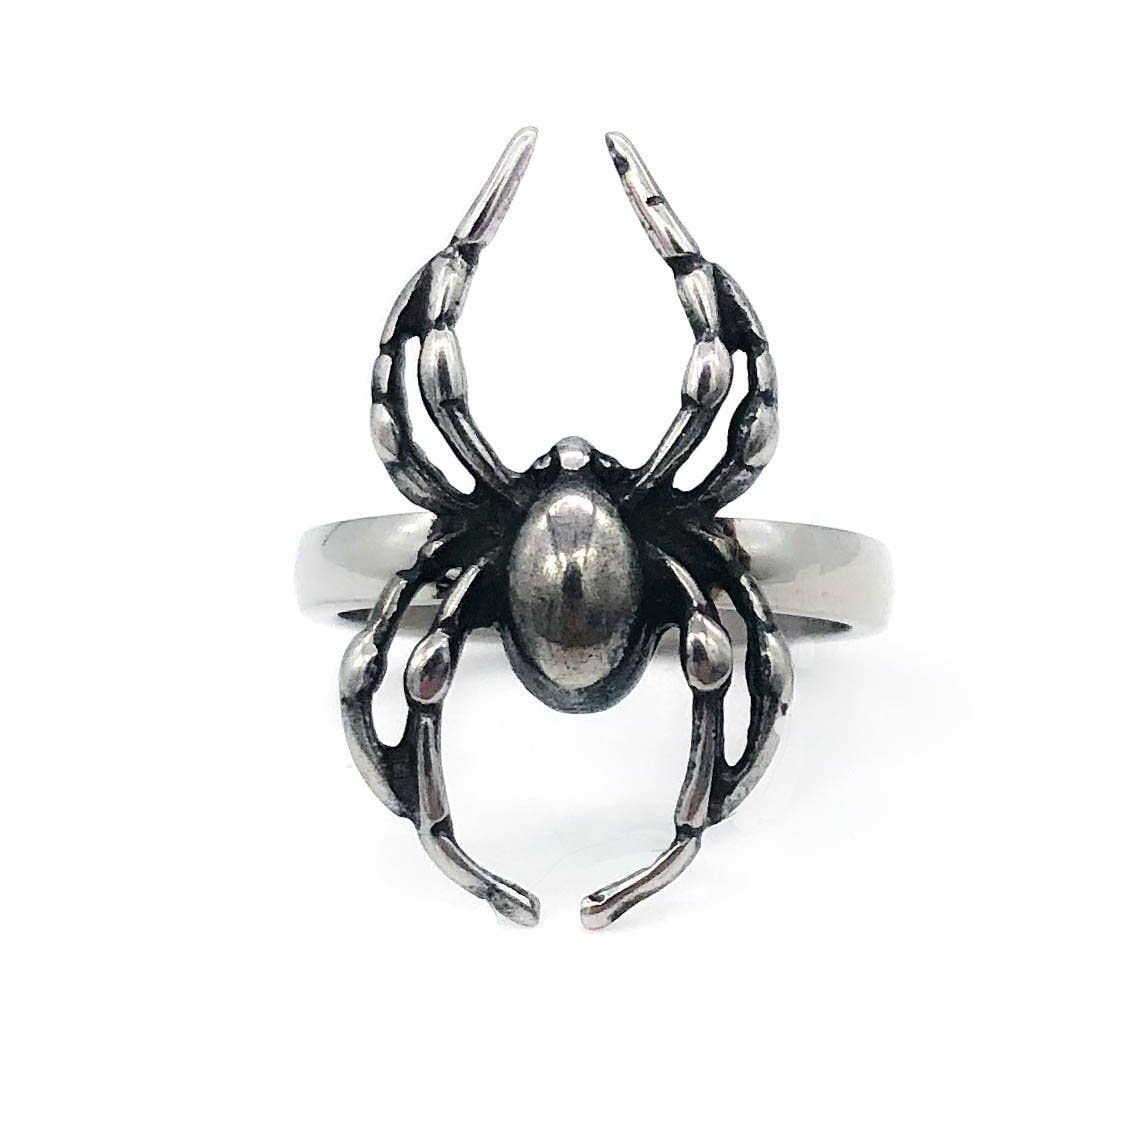 Orb Weaver Spider Ring